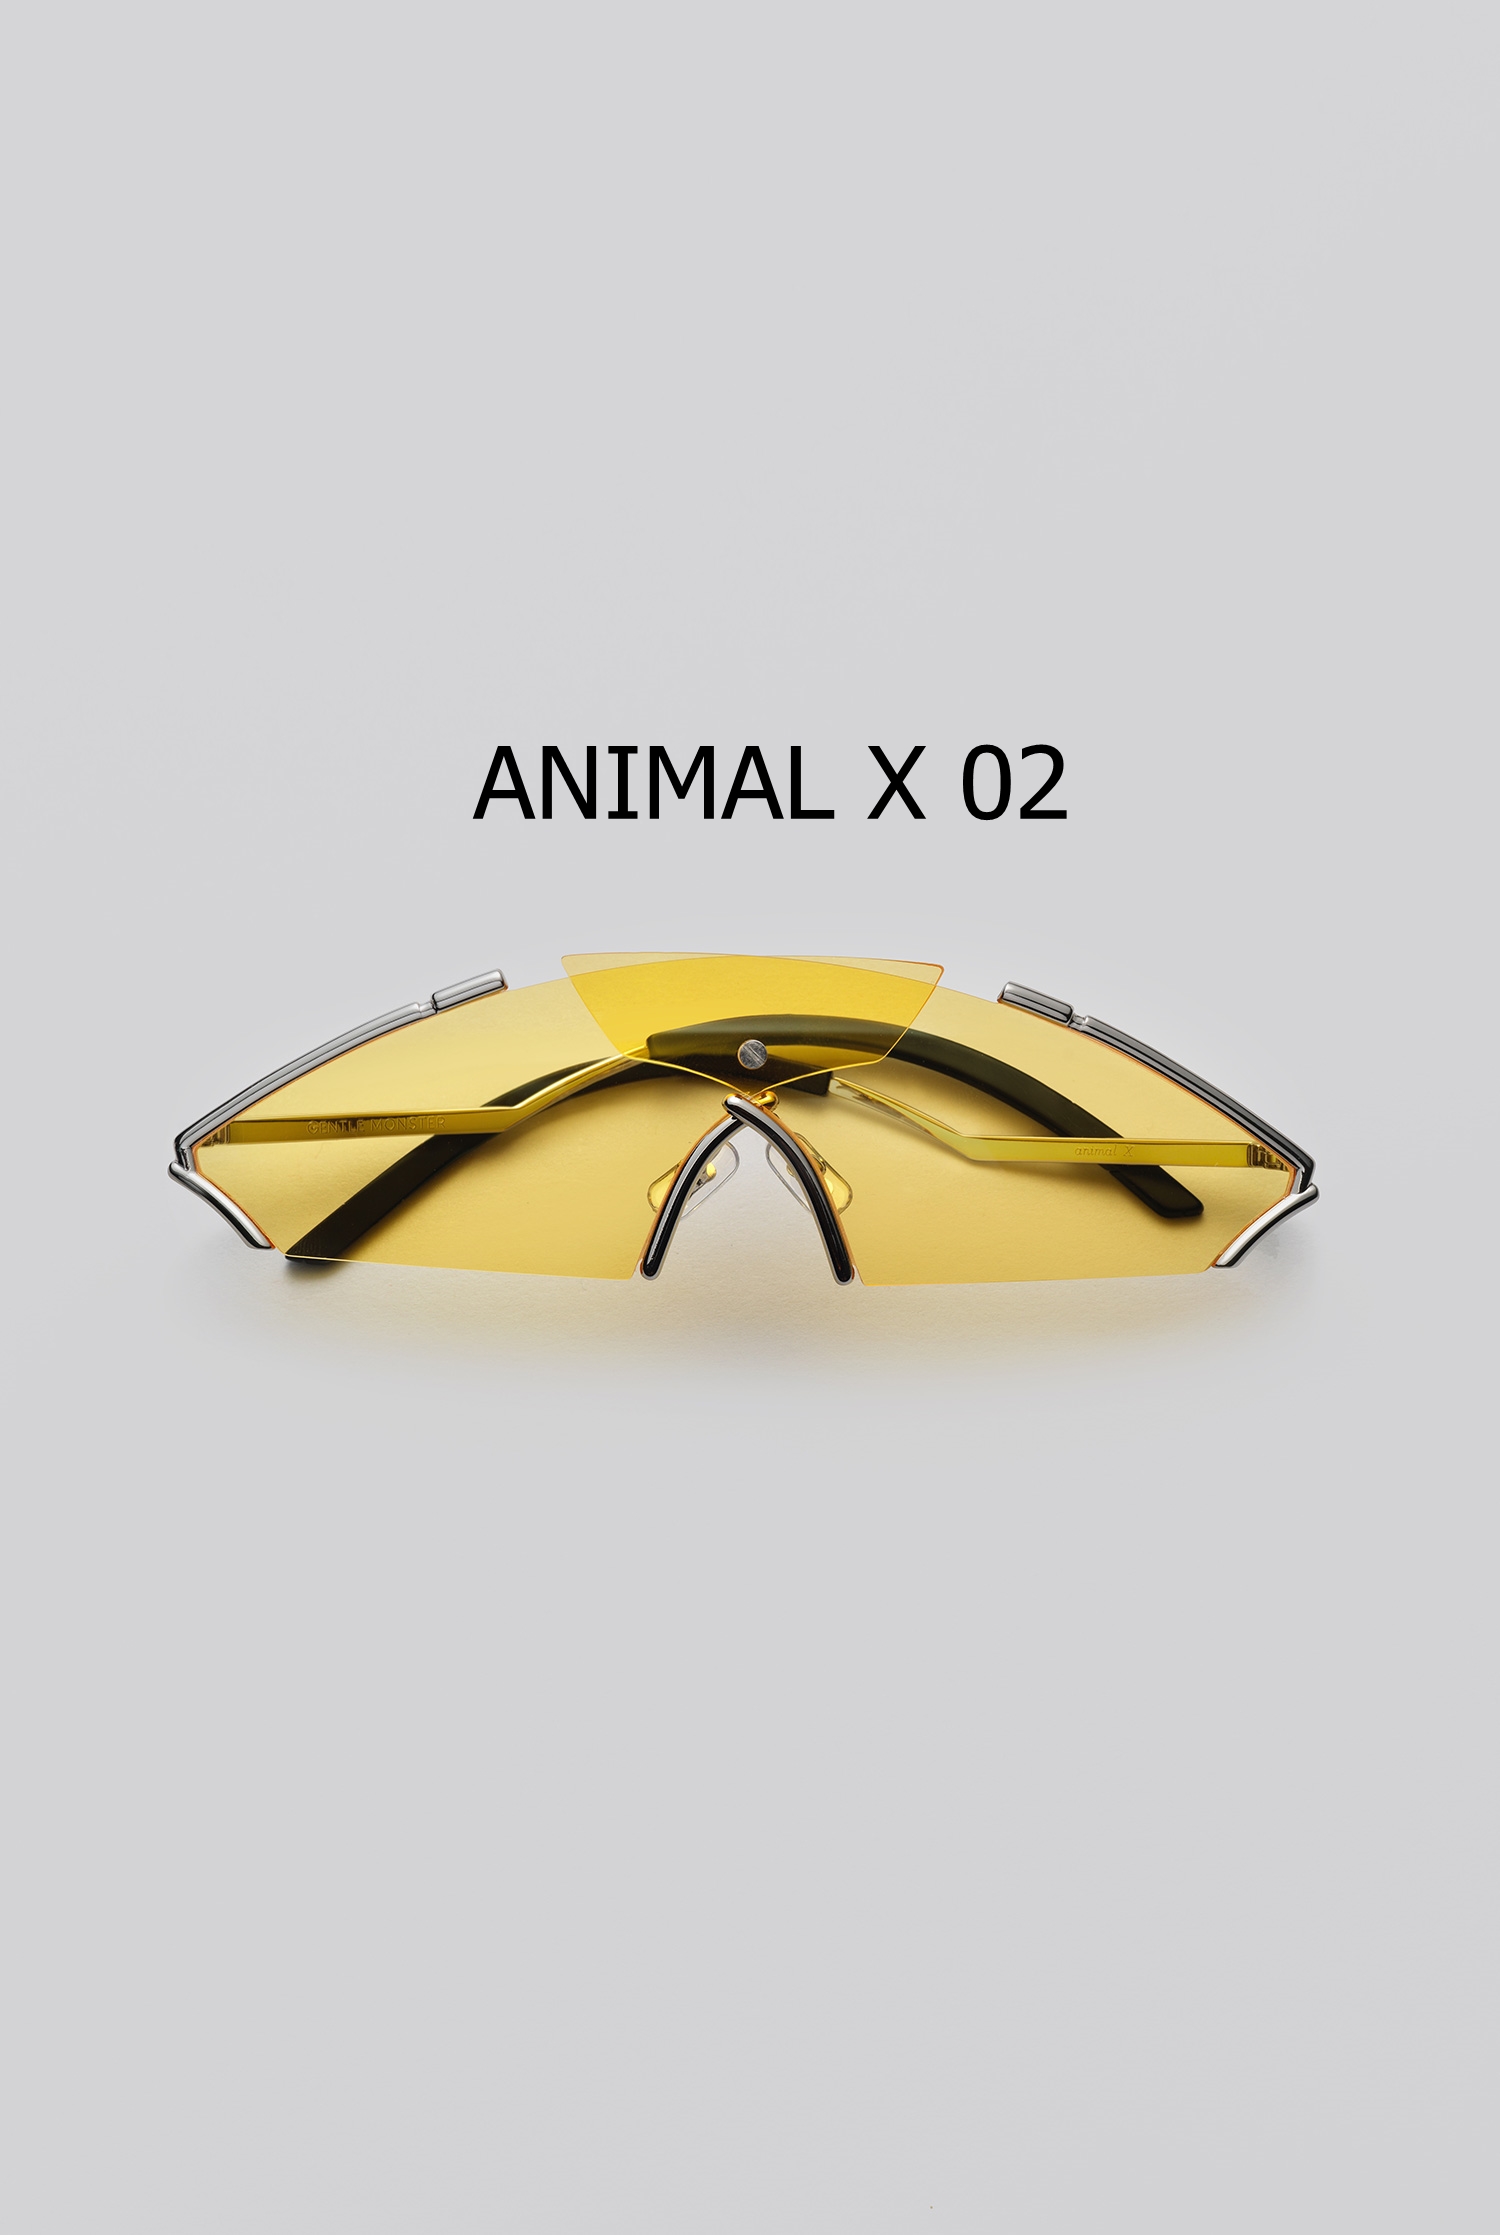 ANIMAL X 02 